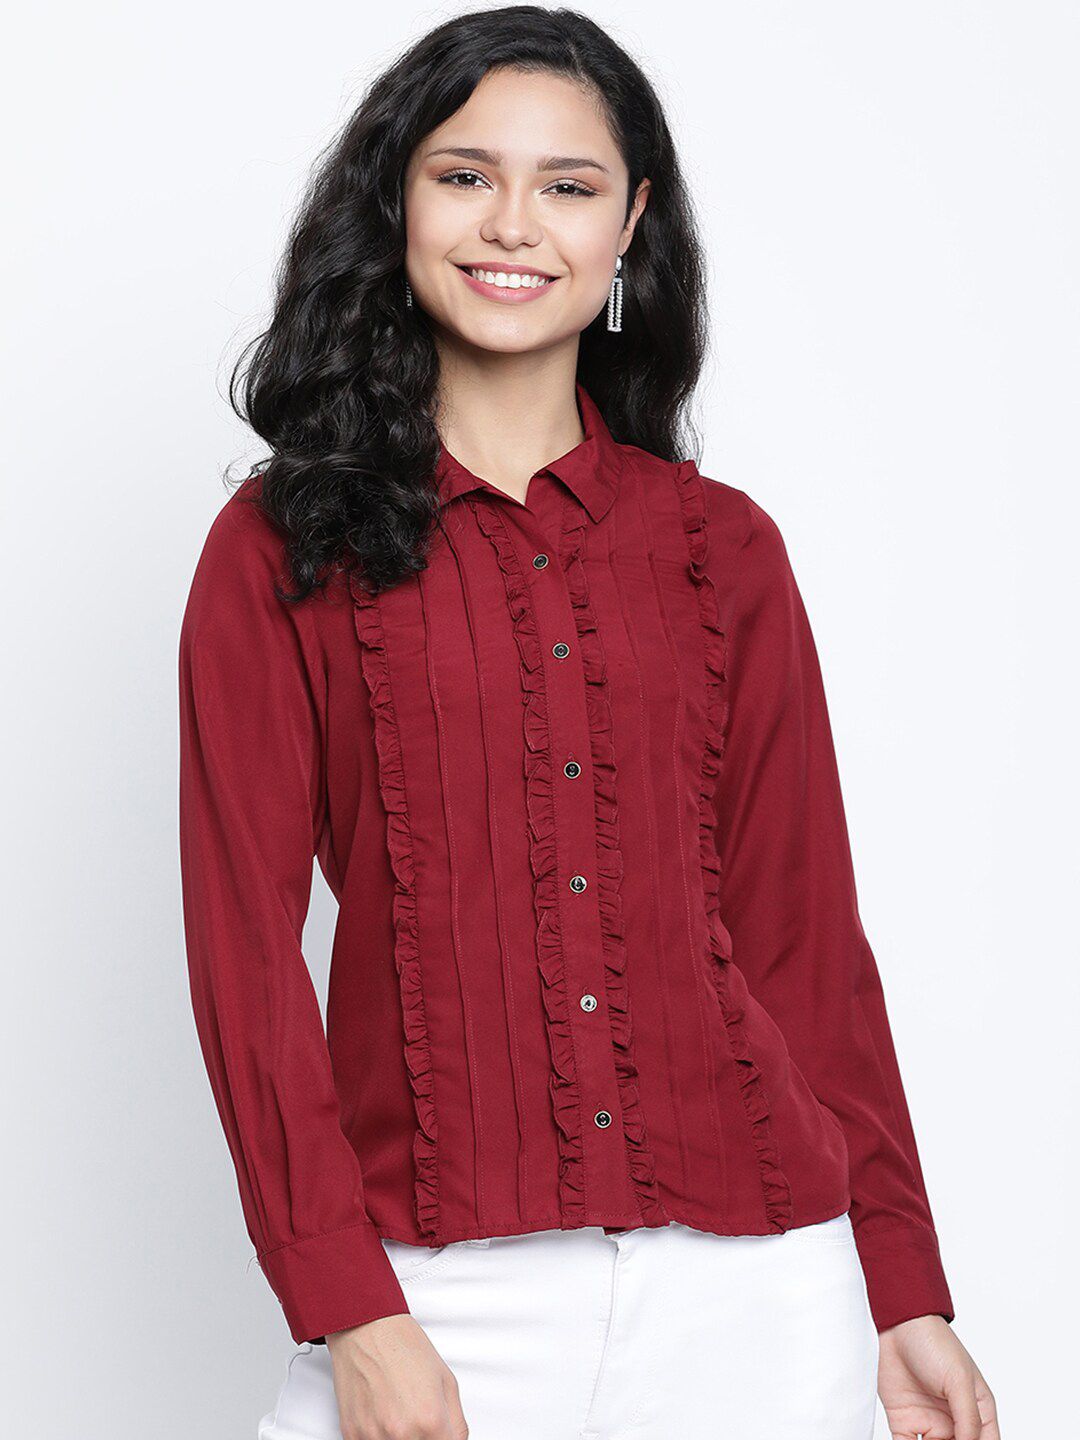 DRAAX Fashions Women Red Ruffles Chiffon Shirt Style Top Price in India